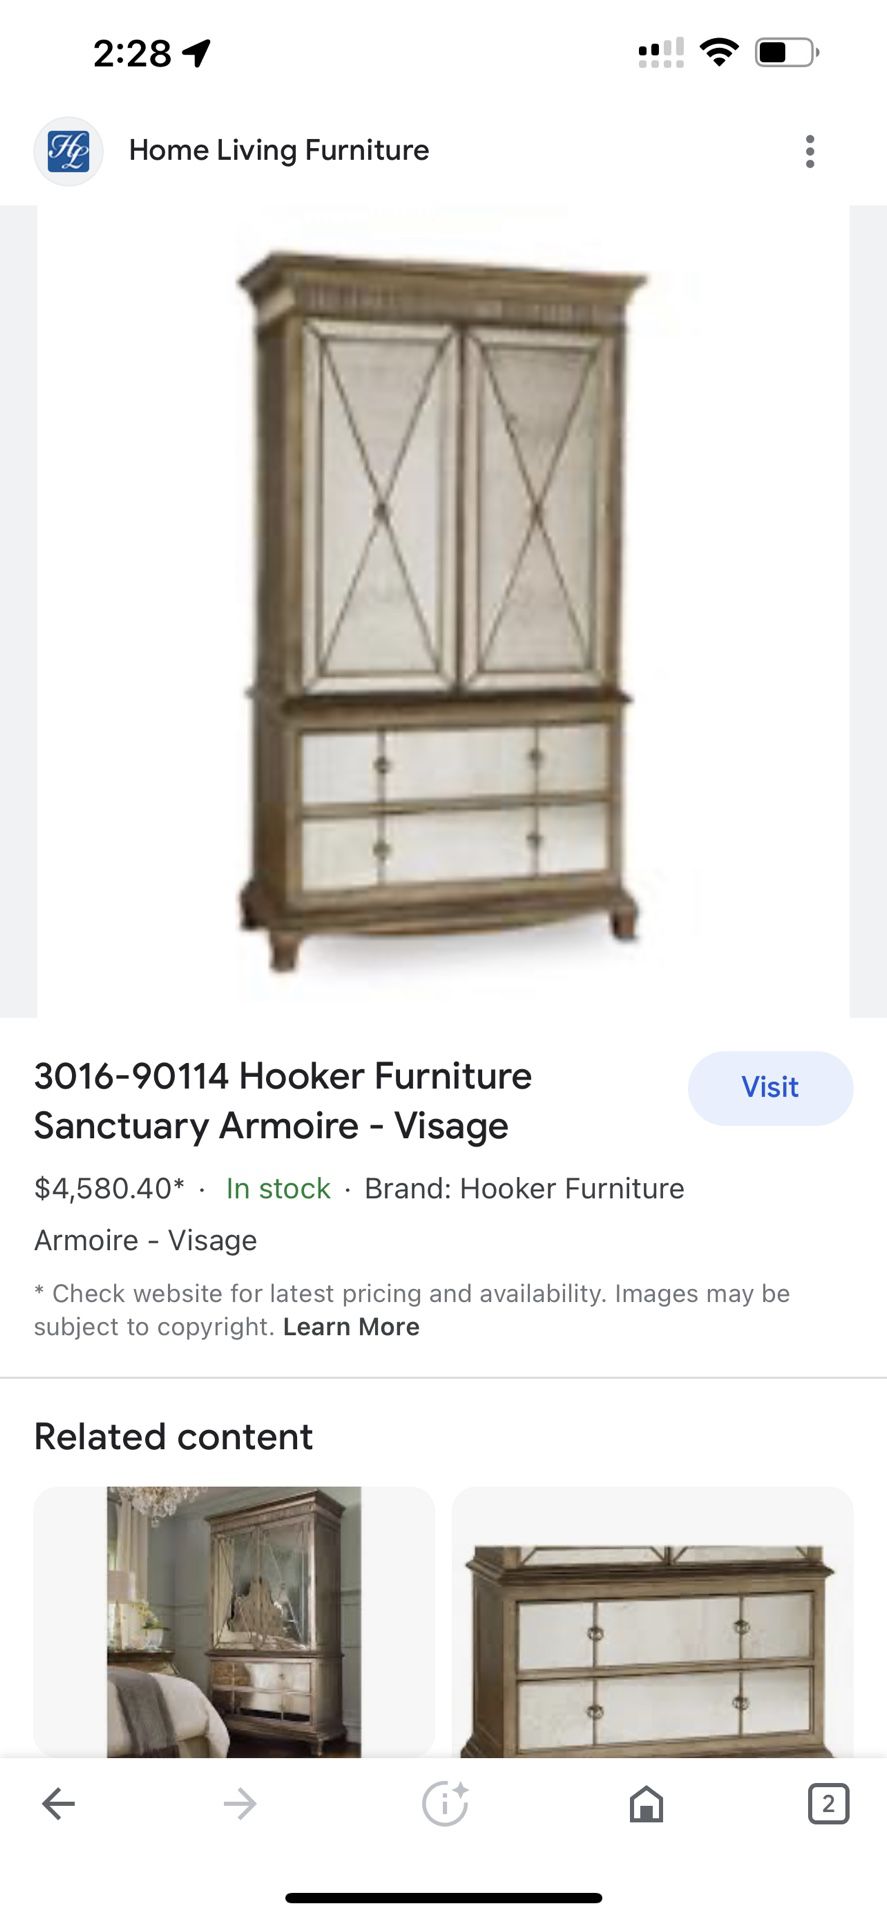 Hooker Furniture Sanctuary Armoire - Visage